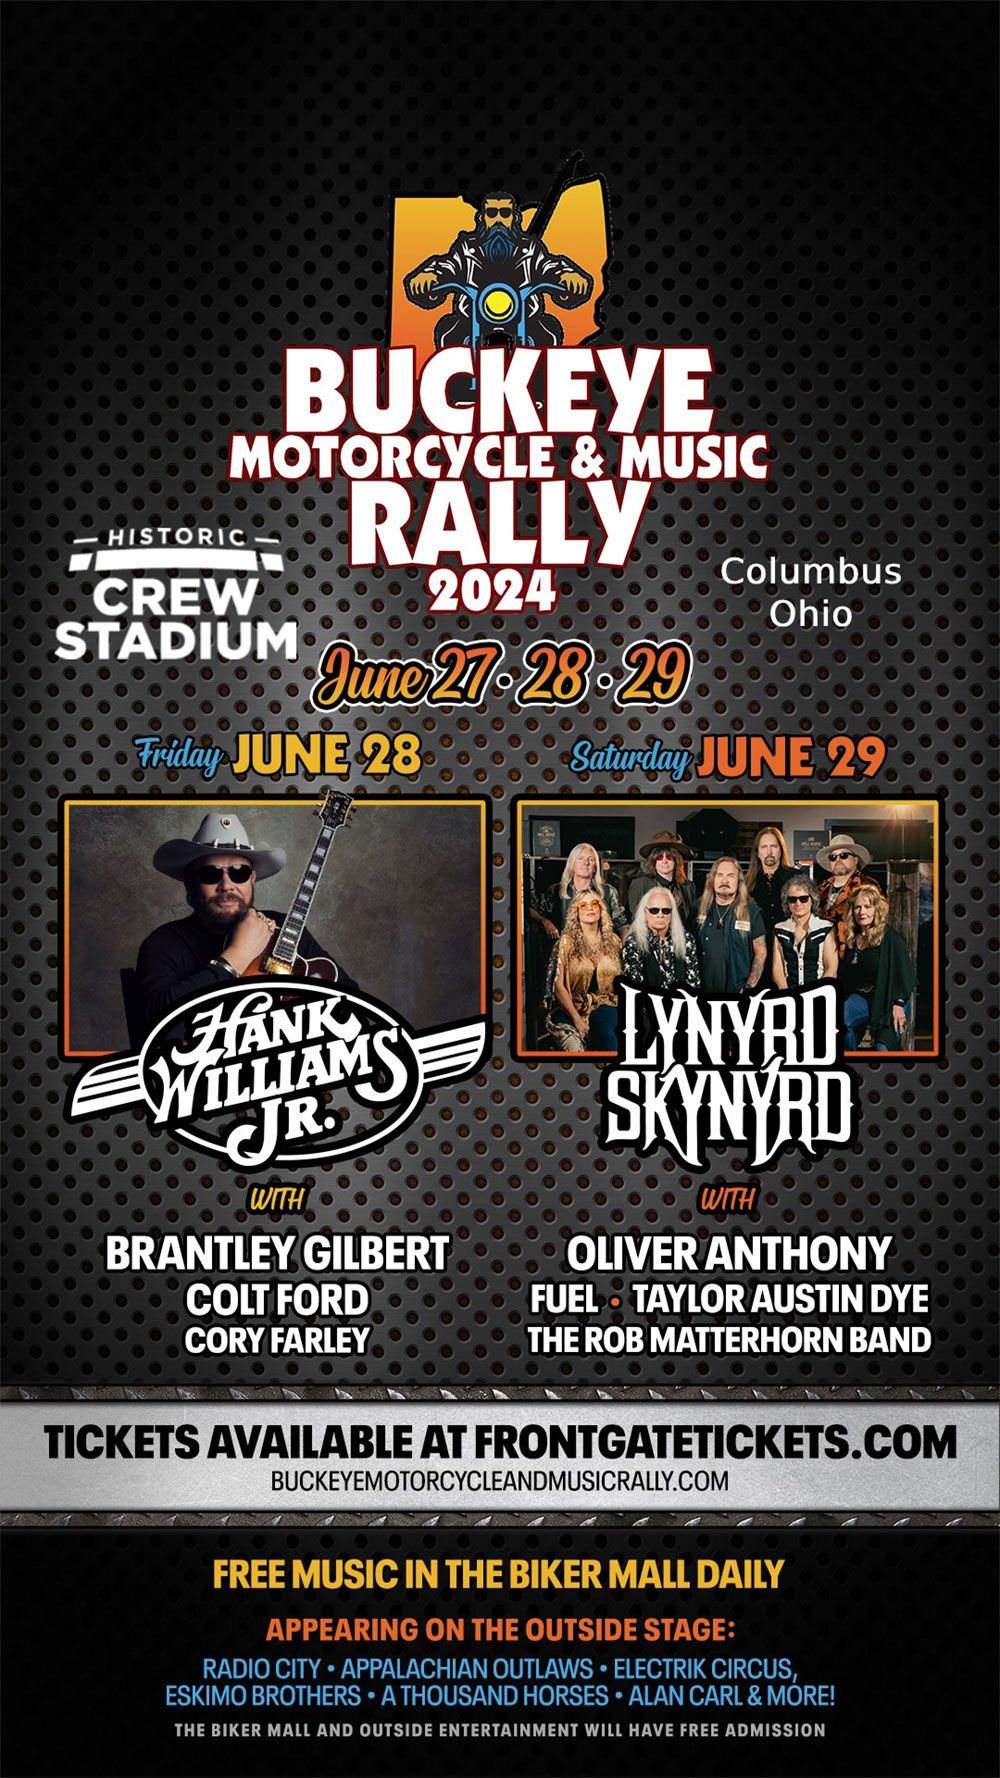 Buckeye Motorcycle & Music Rally 